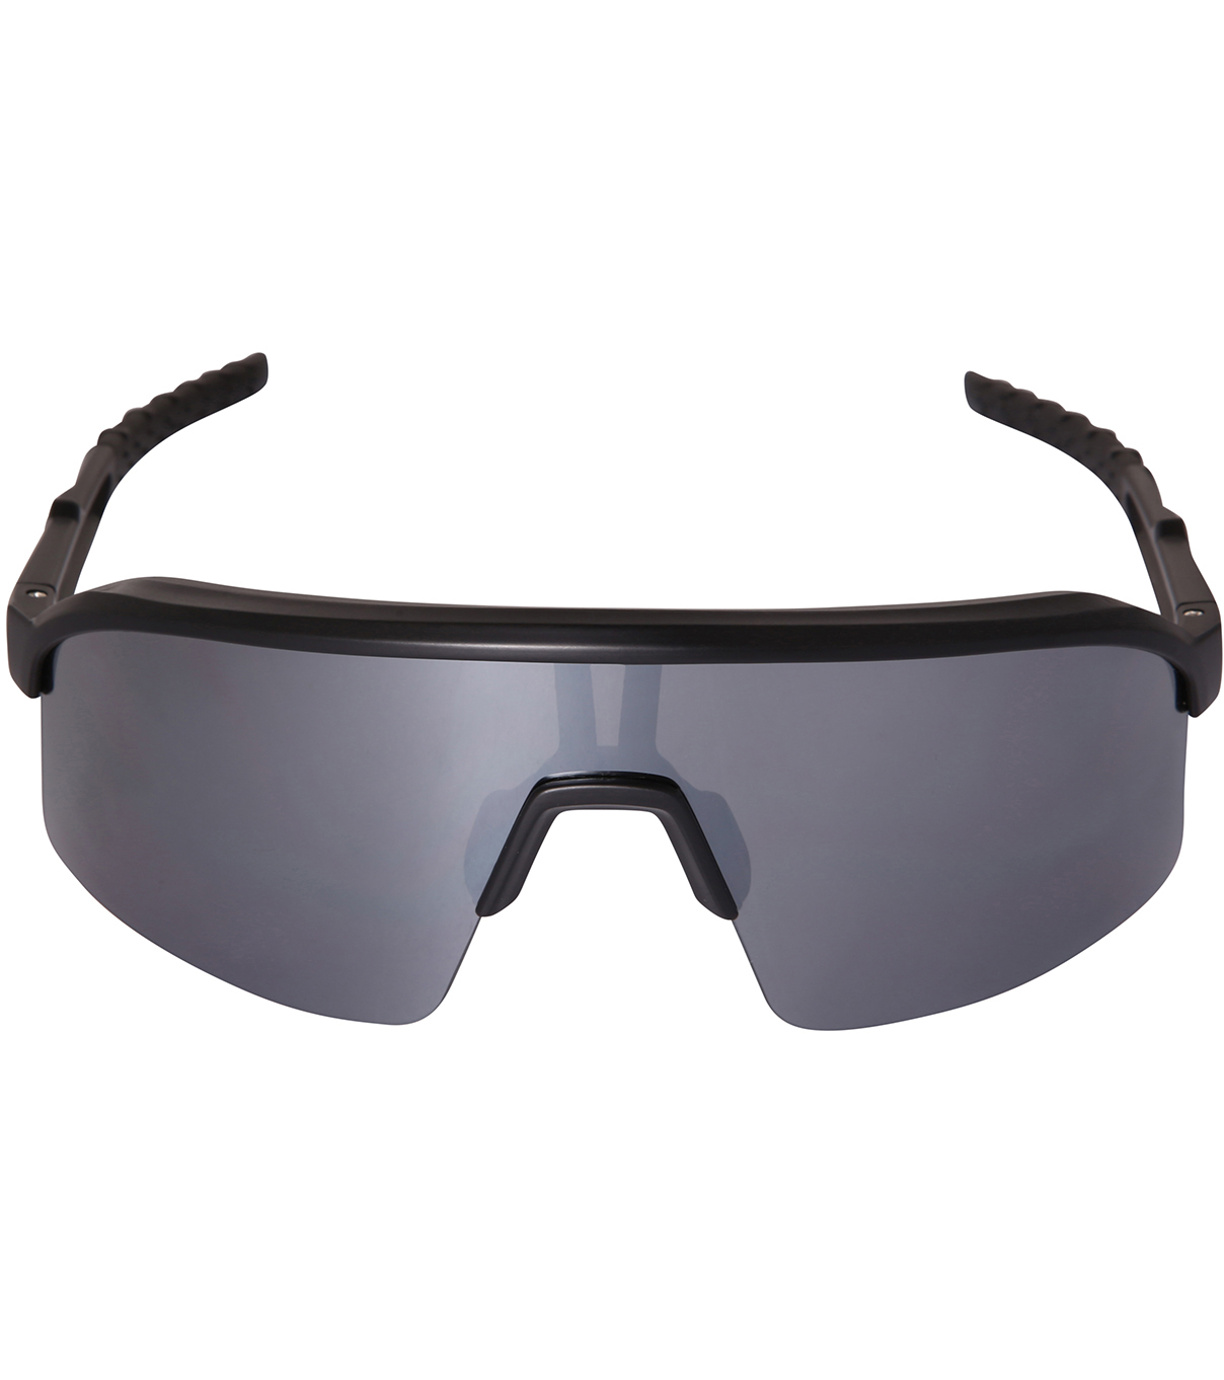 Unisex sportovní brýle SOFERE ALPINE PRO černá